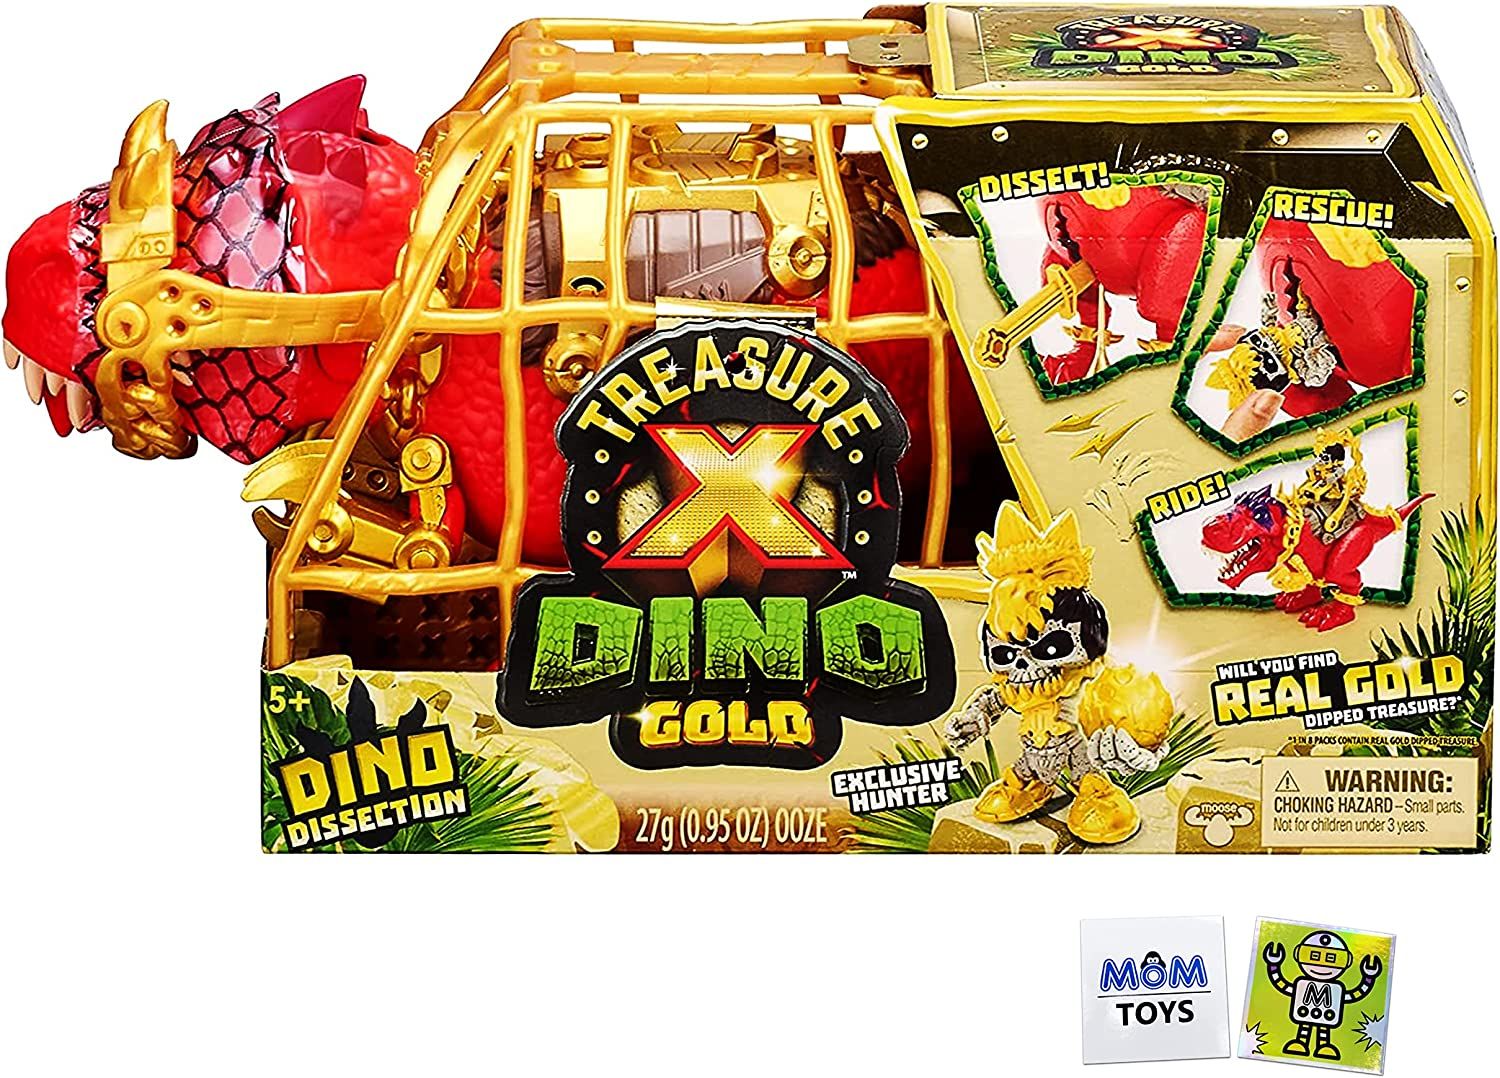 Treasure x gold. Treasure x Dino Gold. Treasure x Treasure x Dino Gold. Treasure x Dino Gold набор. Dino Gold Treasure x Dissection.